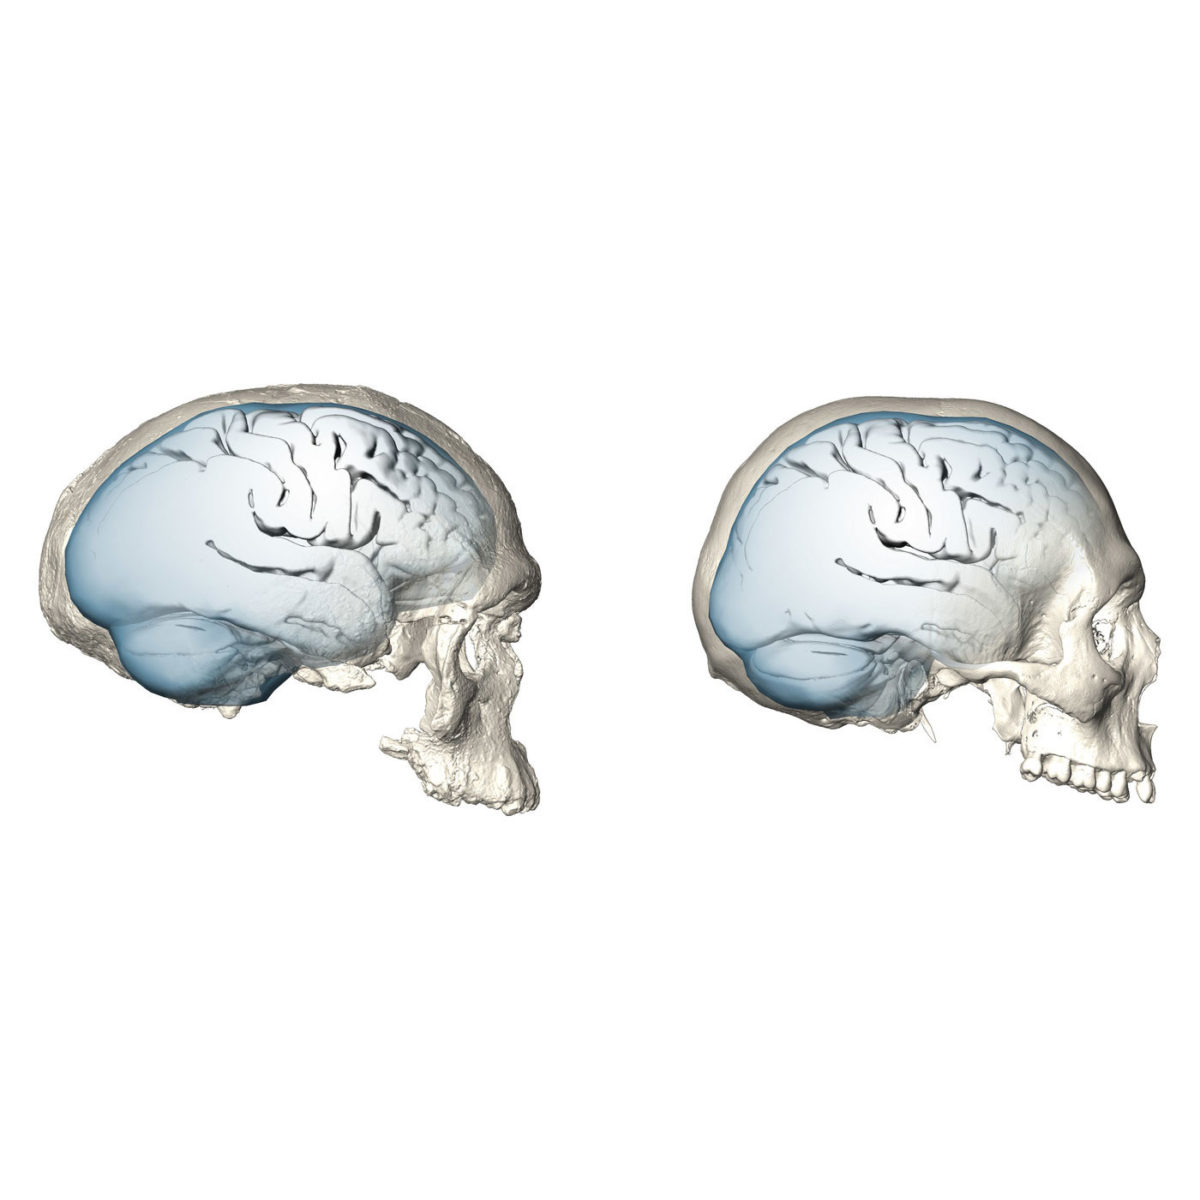 Η εξέλιξη του σχήματος του εγκεφάλου από τον Ηomo sapiens (αριστερά) στον σύγχρονο άνθρωπο. Φωτ.: © MPI EVA/ S. Neubauer, Ph. Gunz (License: CC-BY-SA 4.0)